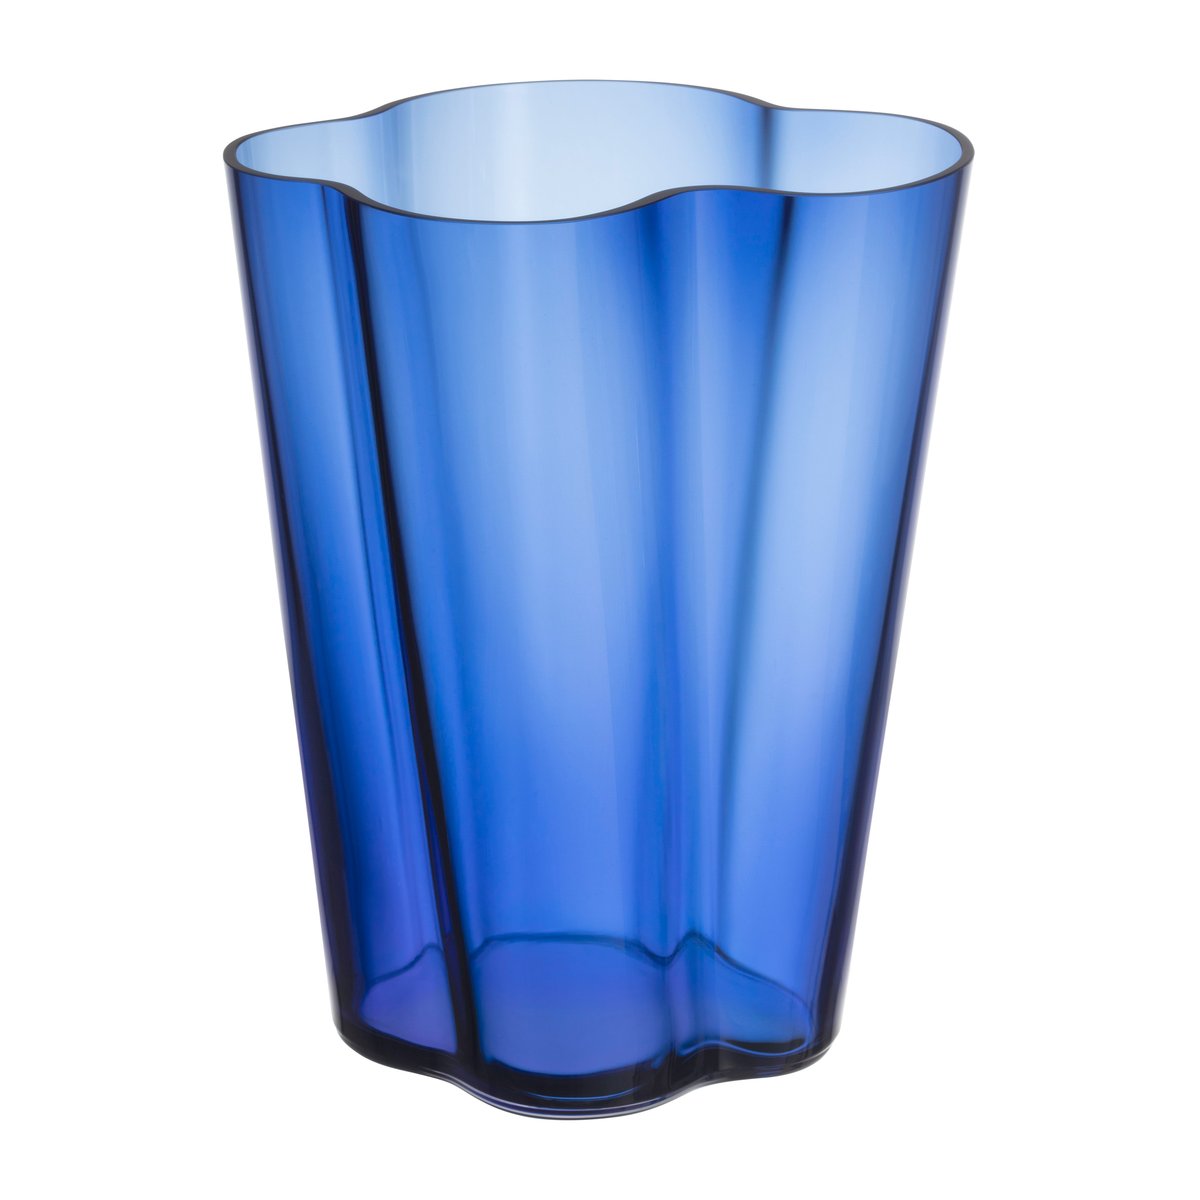 Bilde av Iittala Alvar Aalto vase ultramarineblå 270 mm